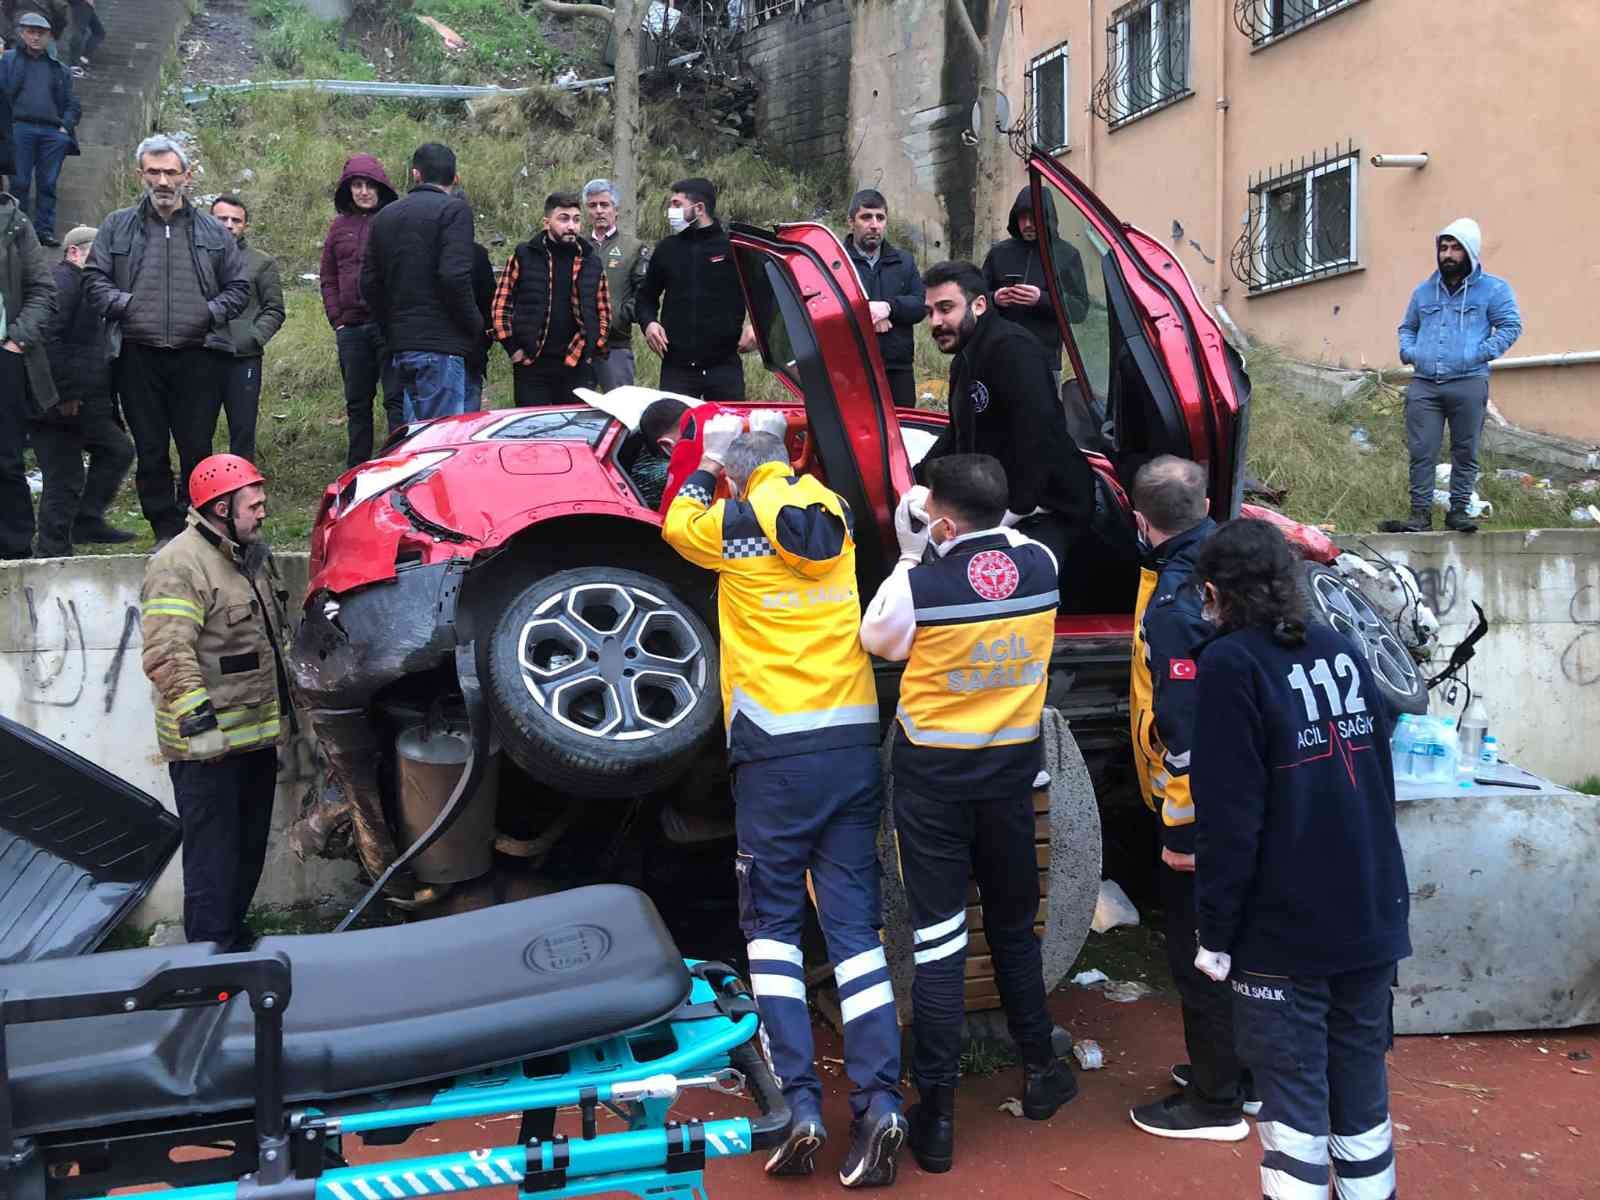 Maltepe’de feci kaza: 25 metreden çocuk parkına uçtu #istanbul